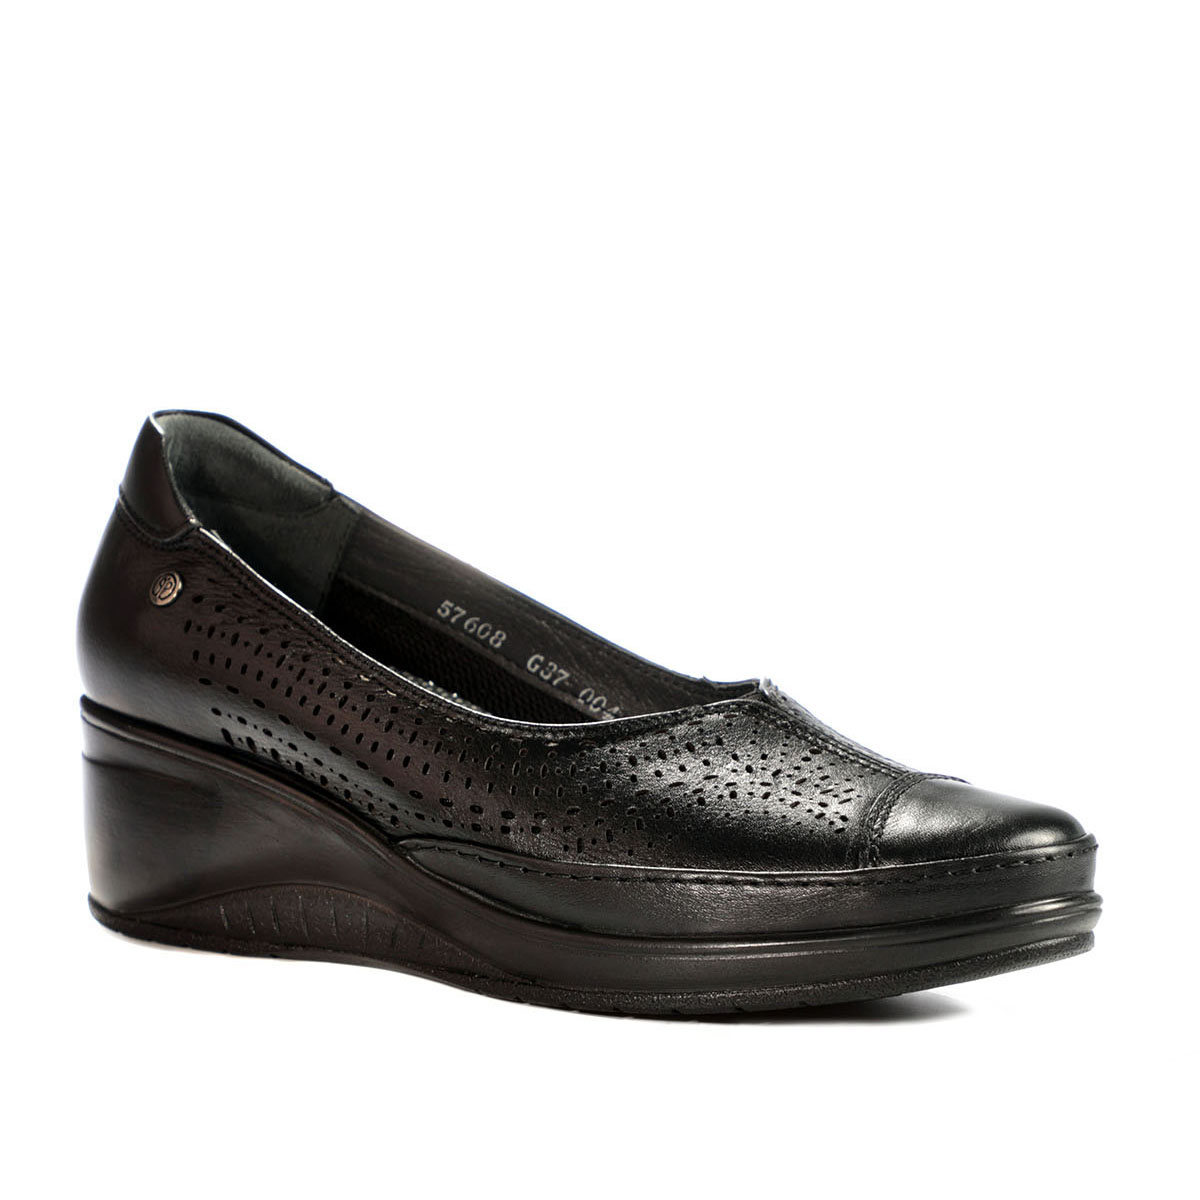 Forelli - Forelli ZEGA-G Comfort Kadın Ayakkabı Siyah